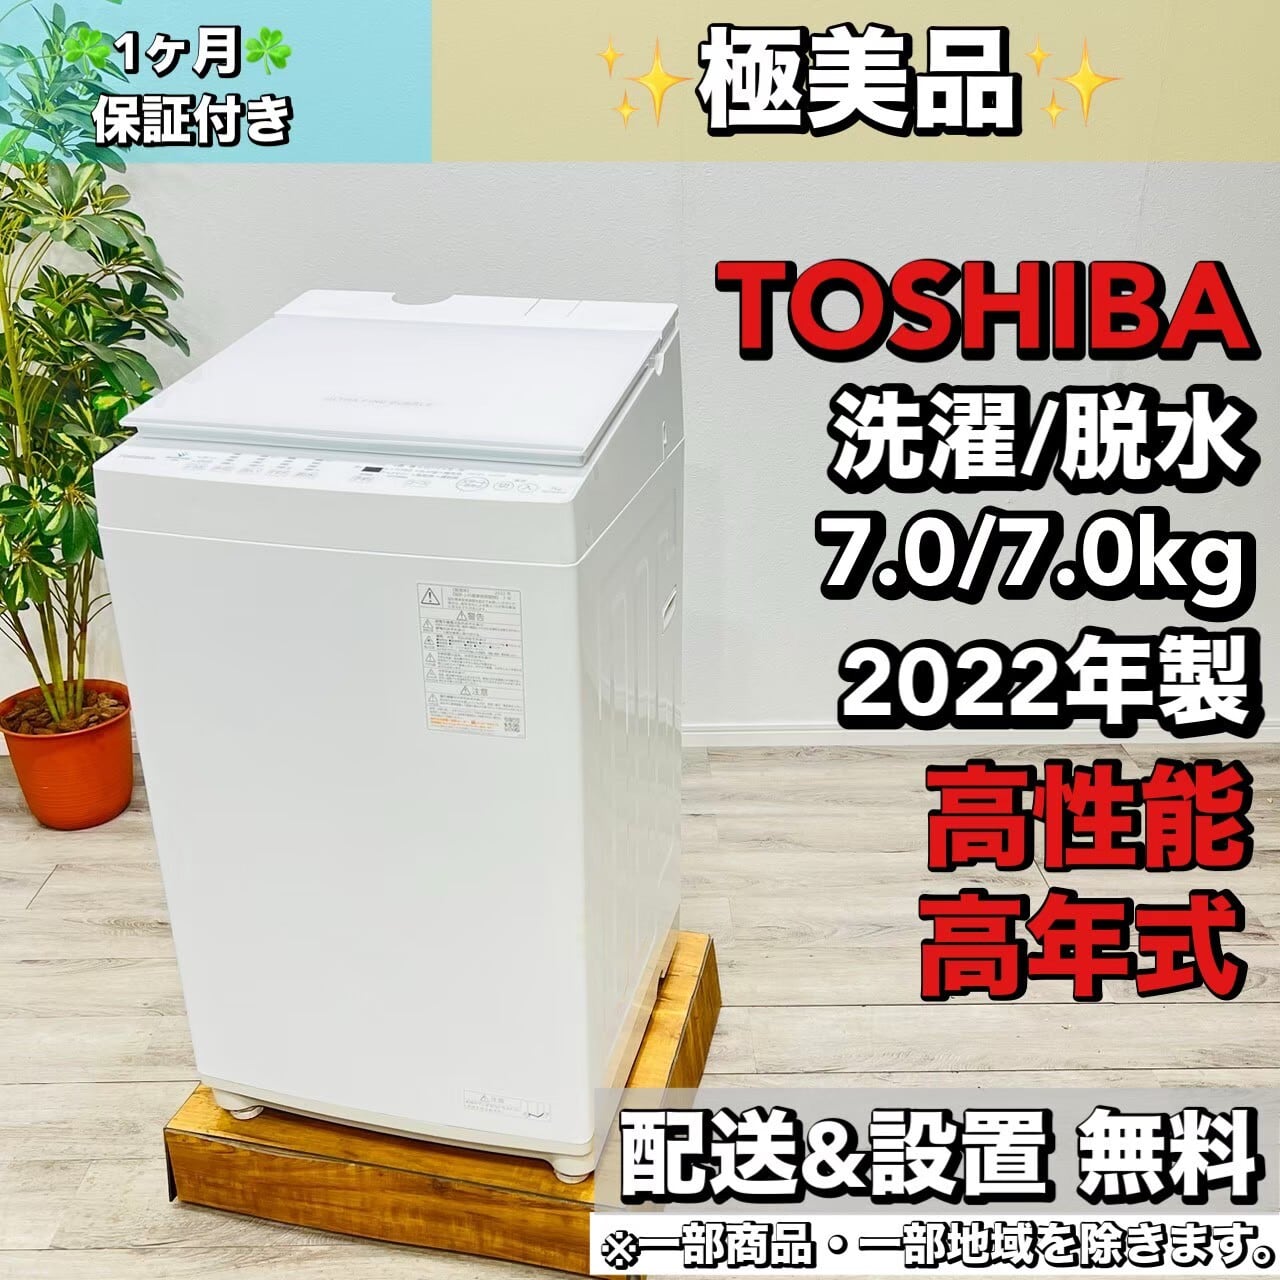 ♦️HITACHI a1821 洗濯機 7.0kg 2018年製 9♦️ | ネットでリサイクル ...